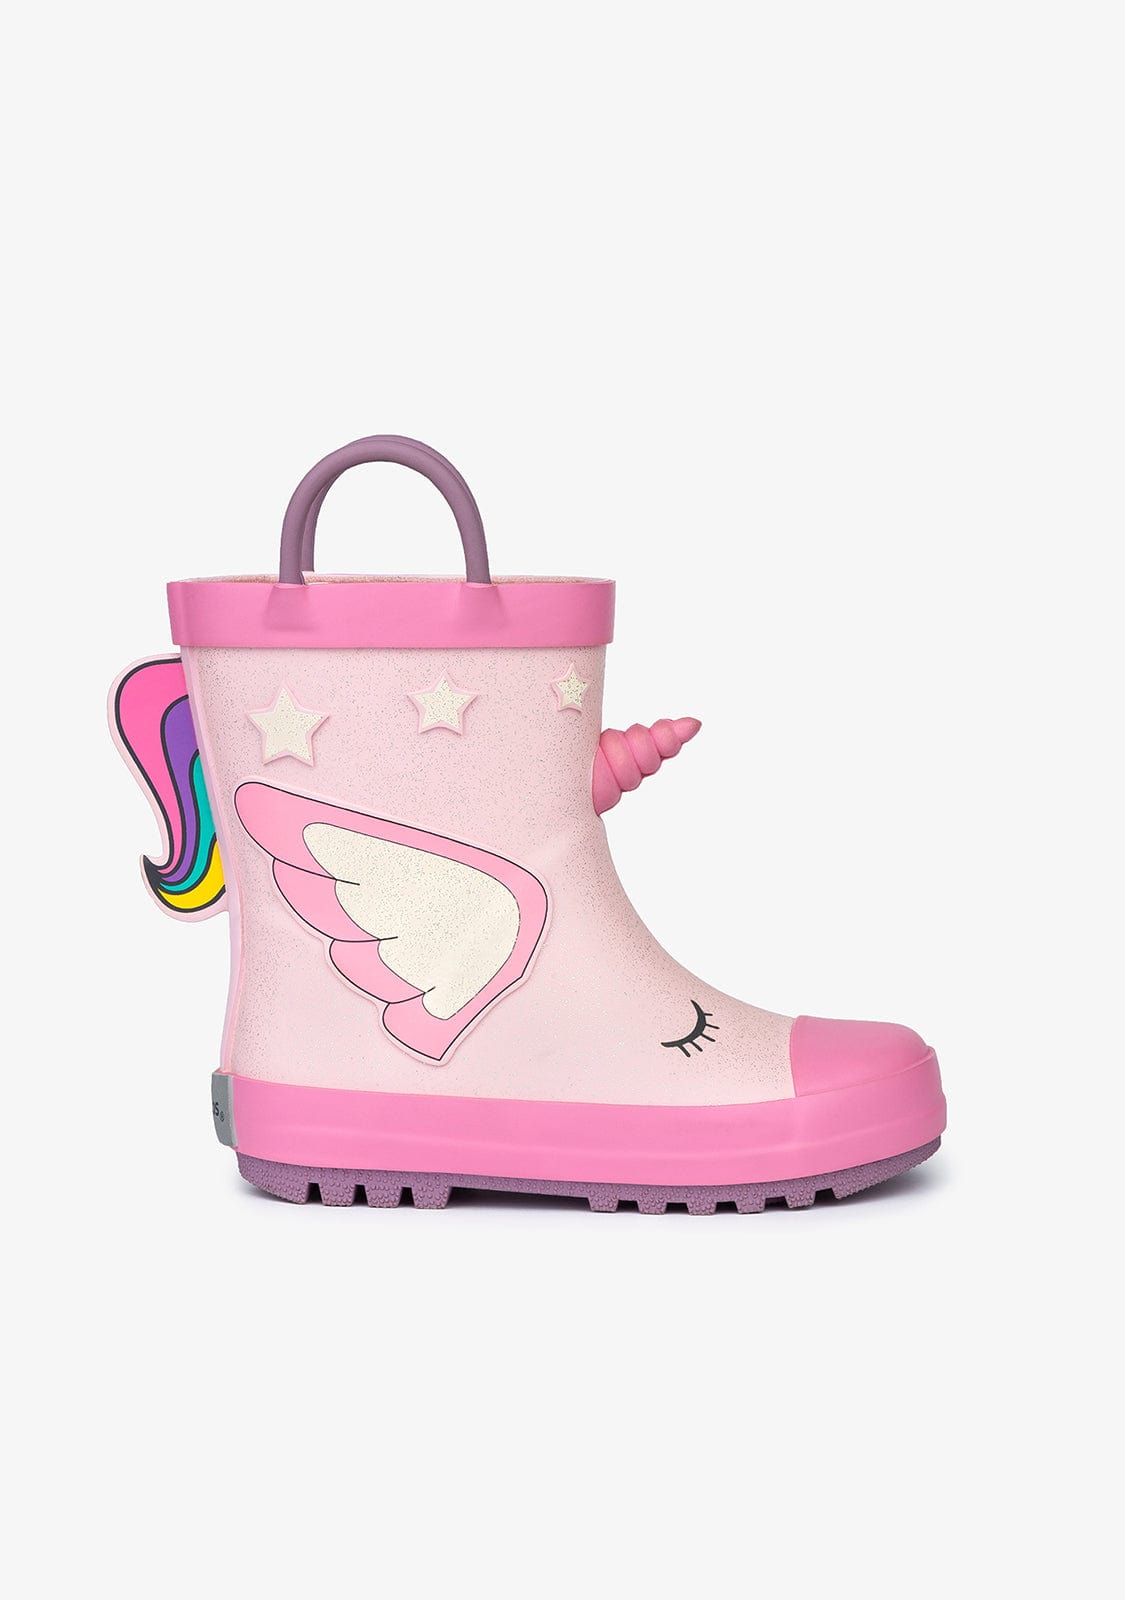 CONGUITOS Shoes Light Pink Unicorn Rain Boots Rubber